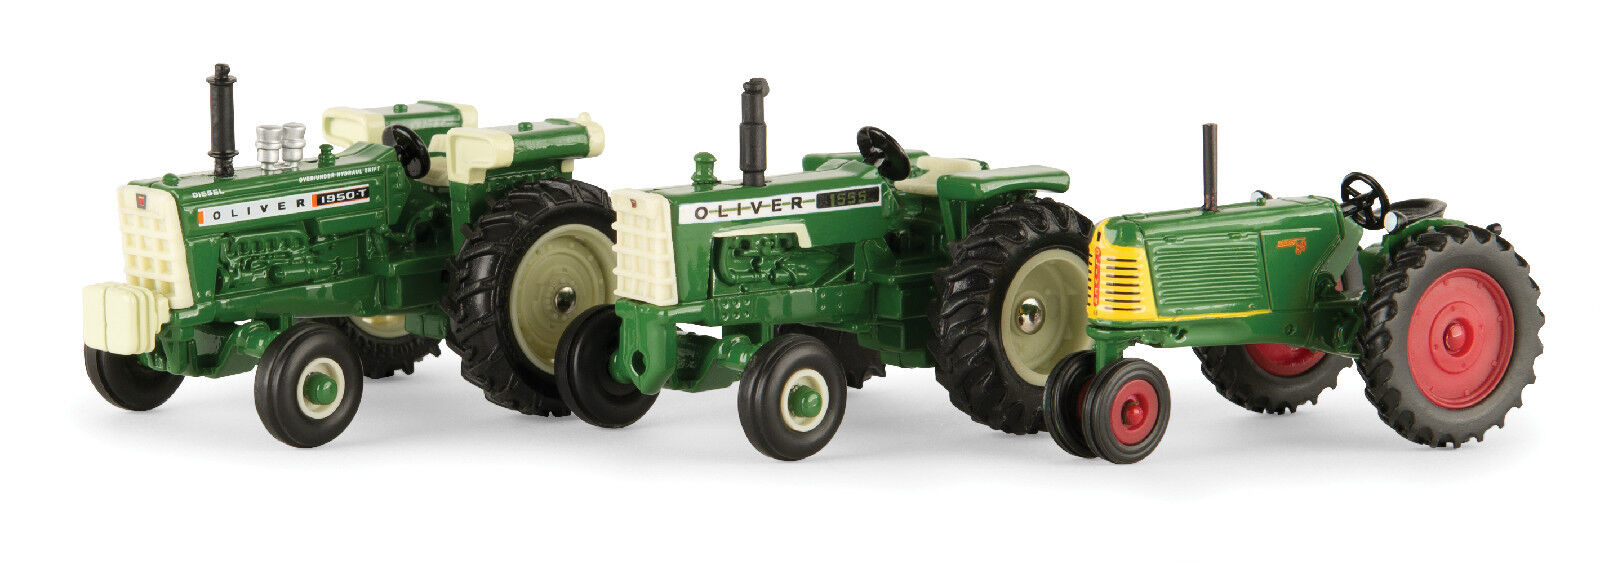 1/64 ERTL Oliver vintage tractor 3 piece set